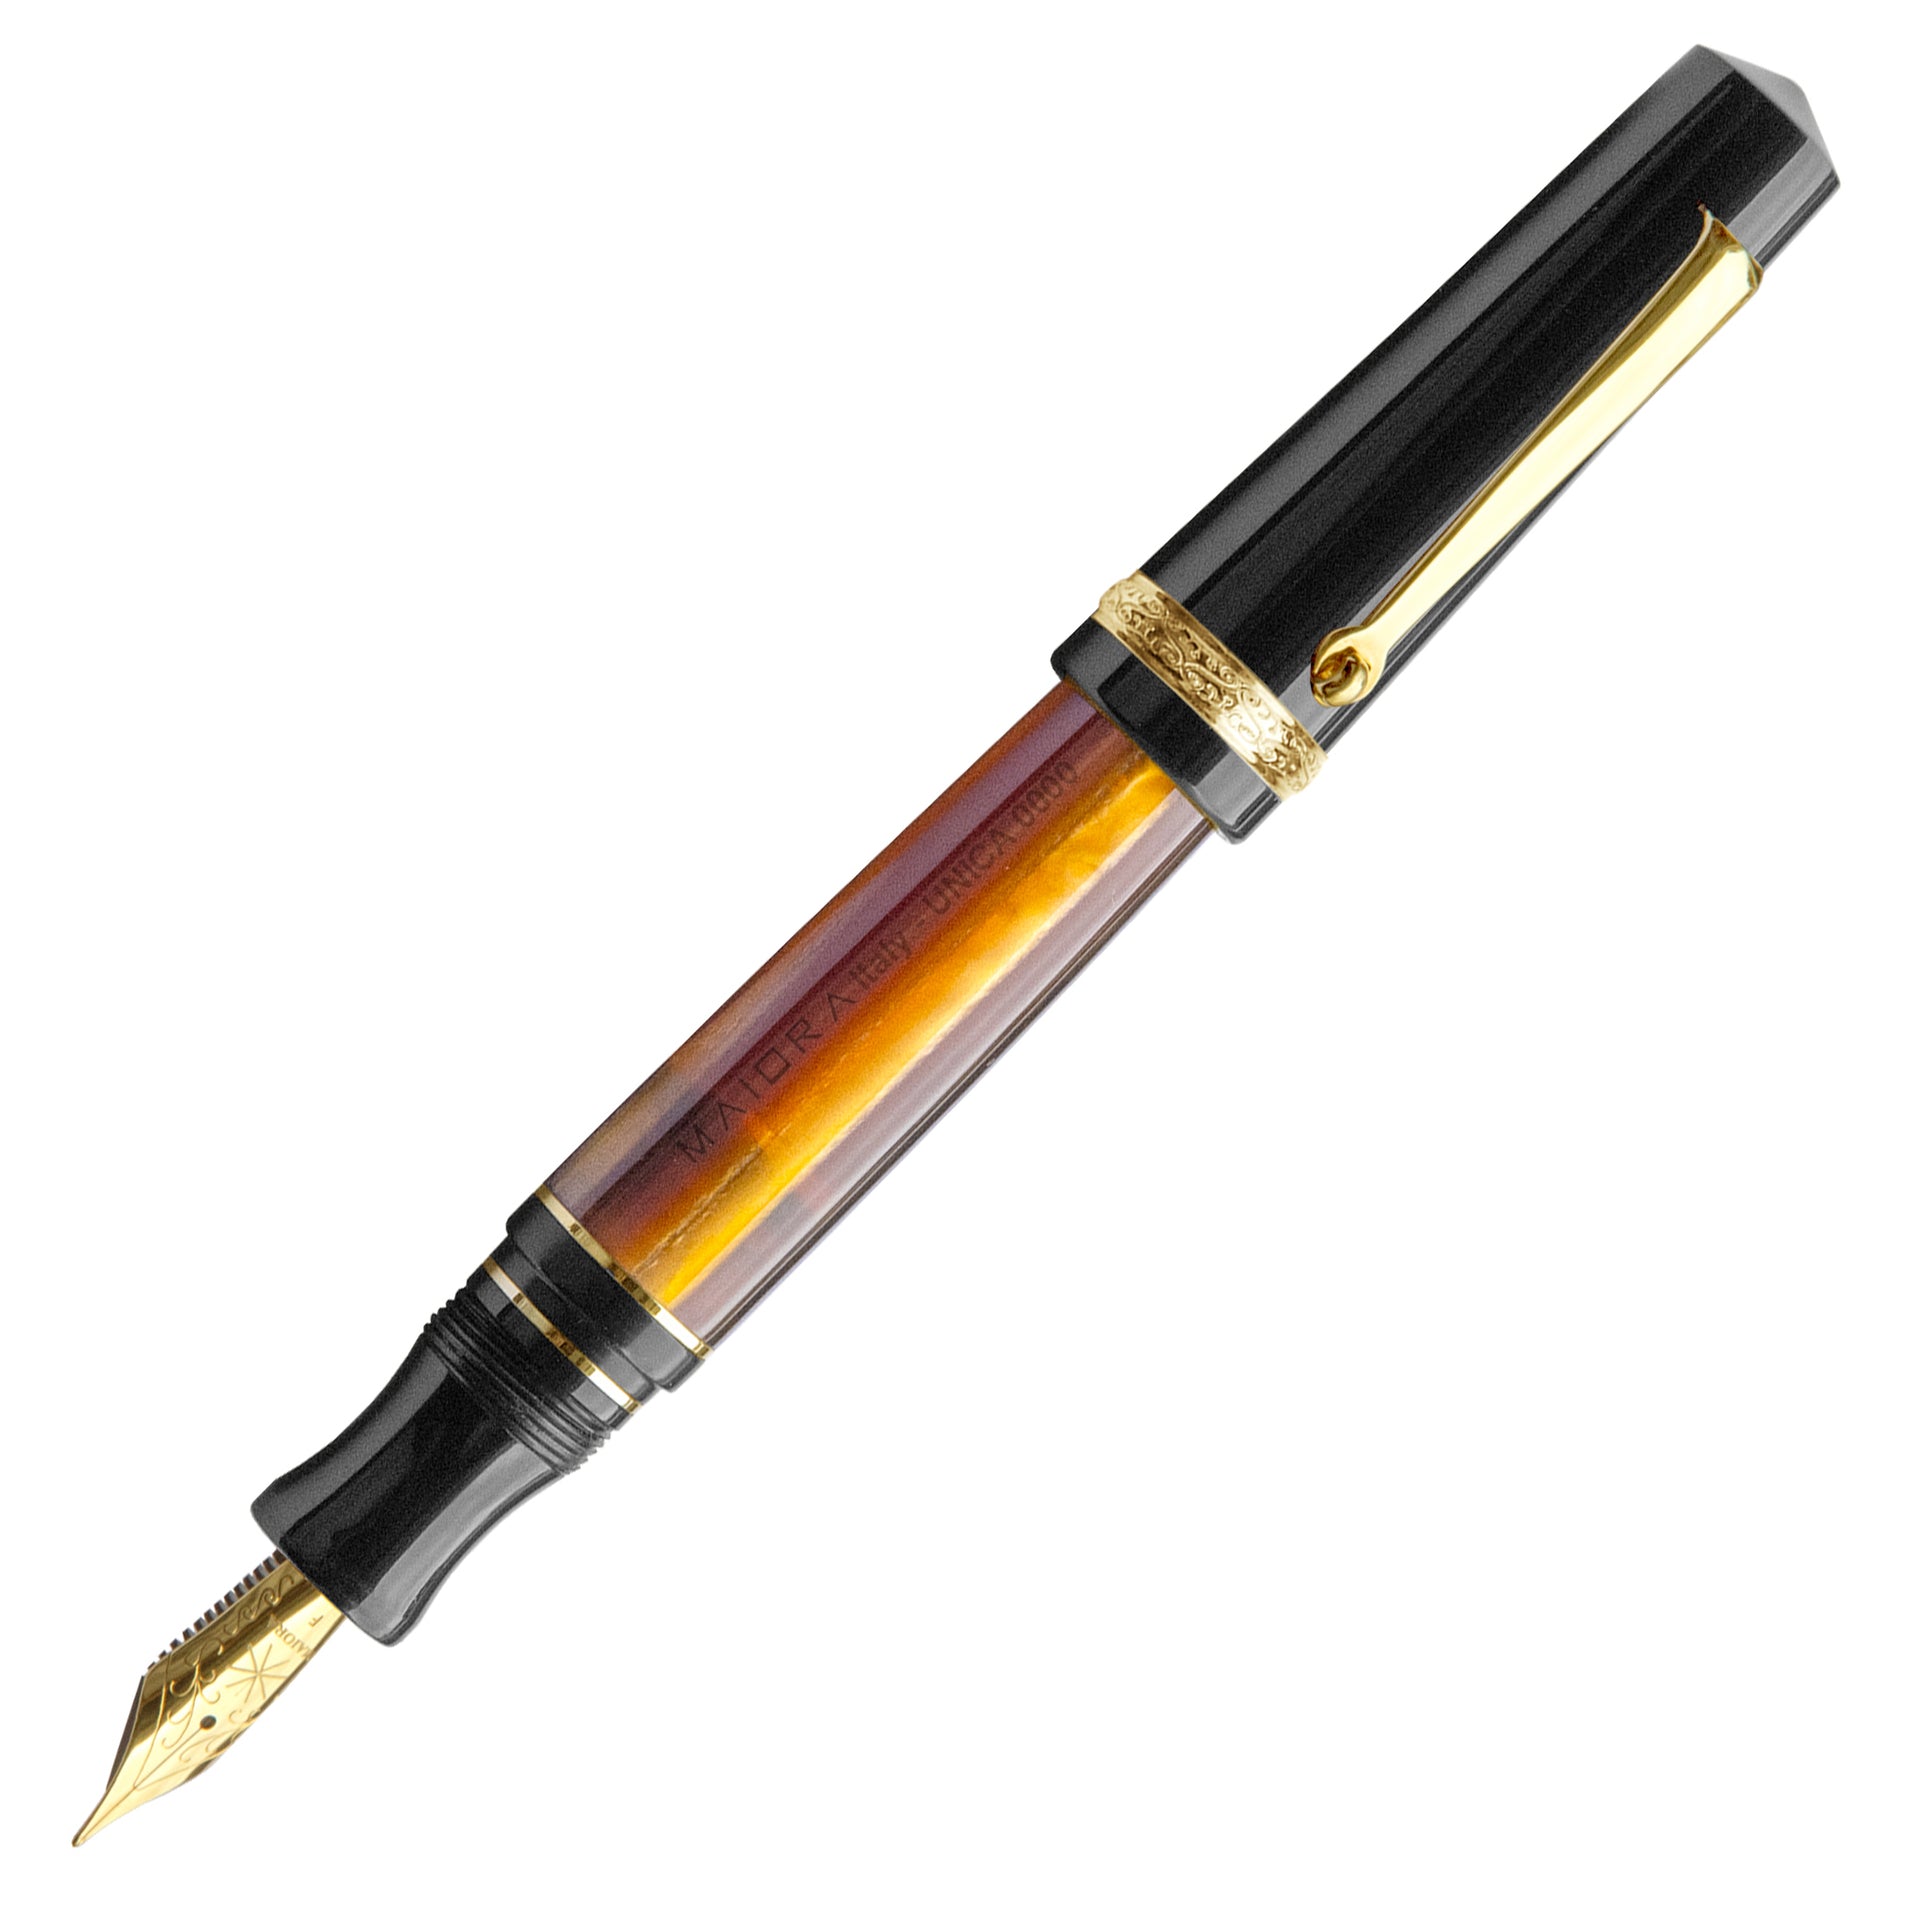 Maiora Aventus UNICA (“UNIQUE”black and orange/ gold plated) fountain pen, Medium Nib